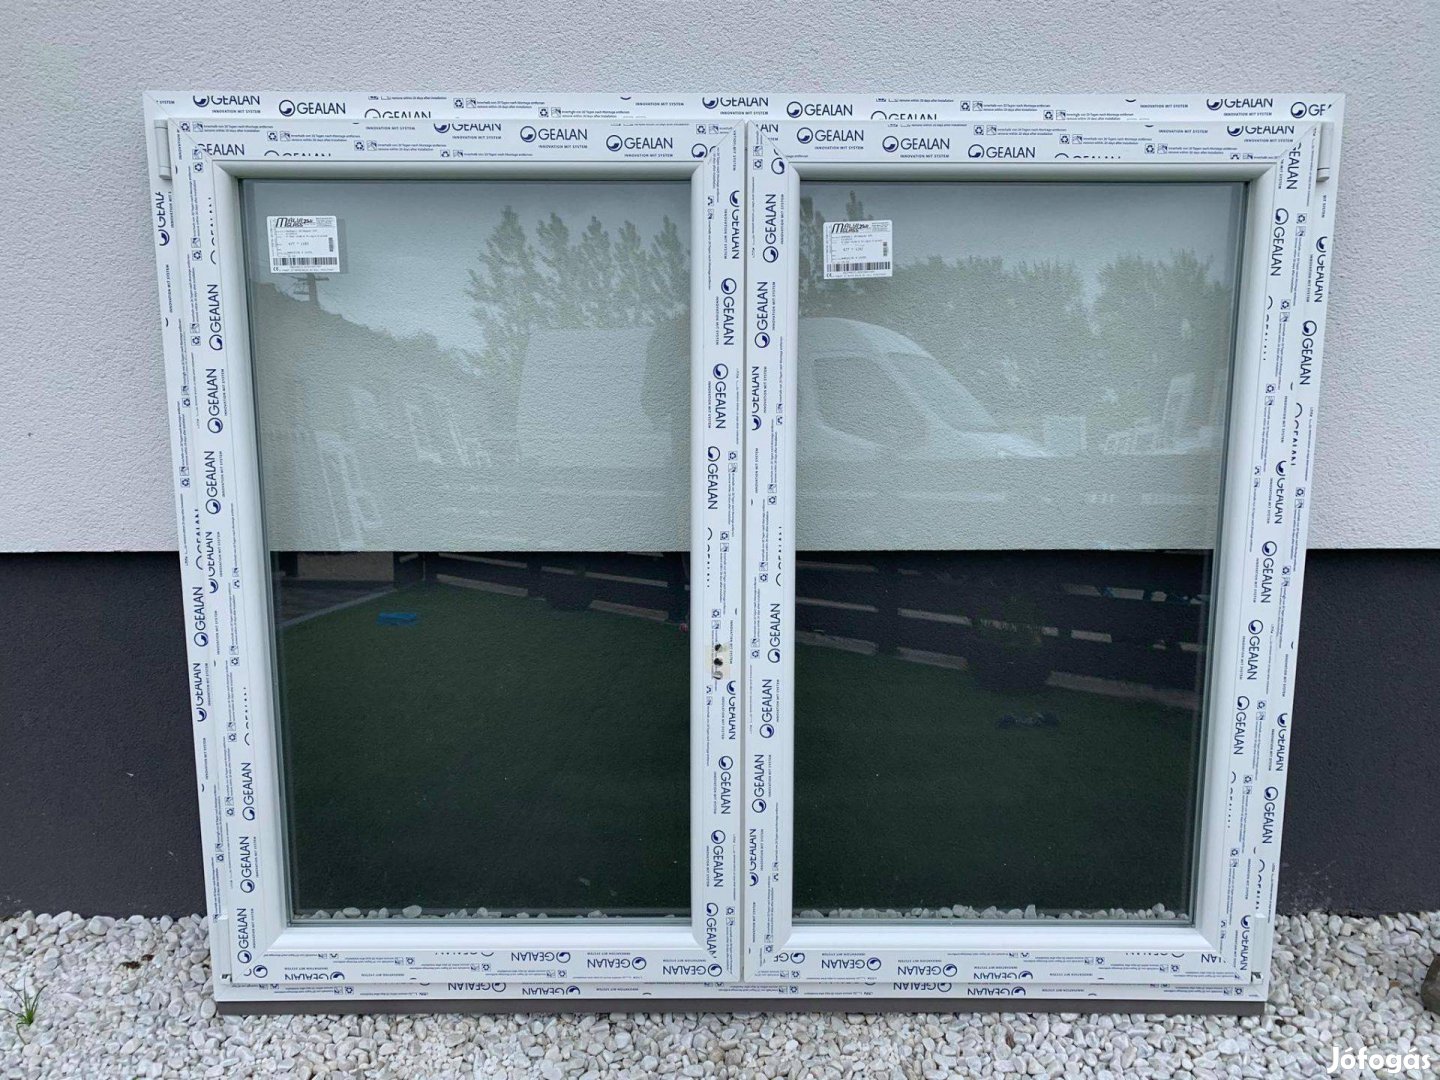 168x138 Új Gealan műanyag ablakok raktárkészletről